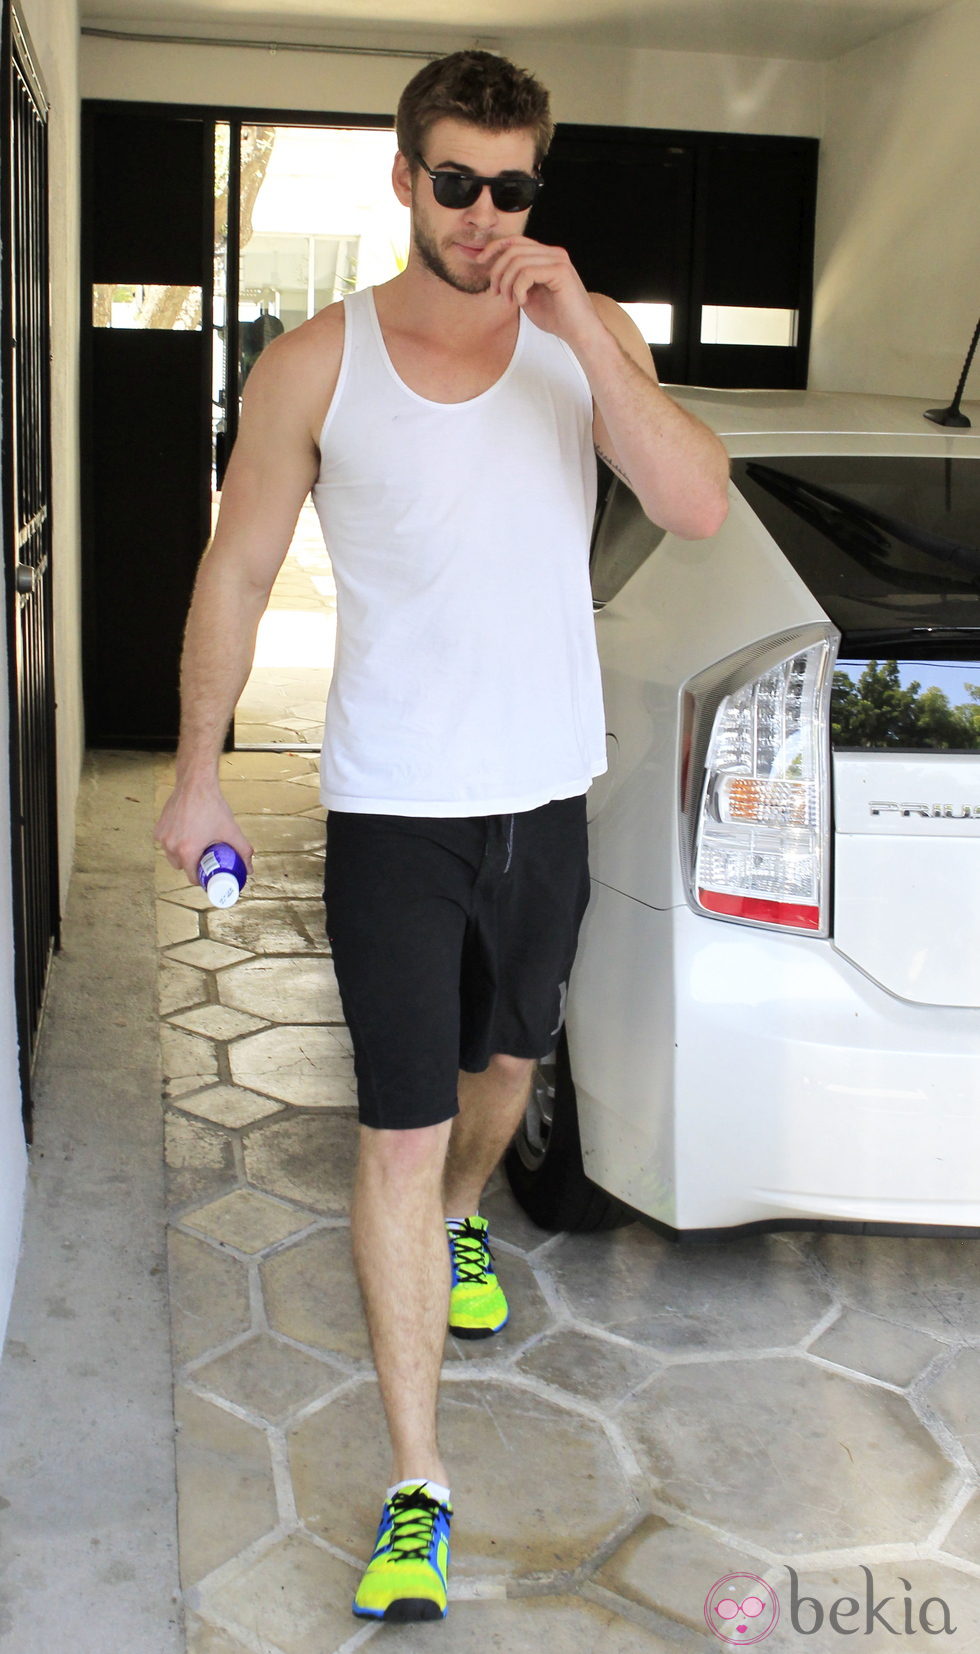 El actor Liam Hemsworth entrenando en el gimnasio.